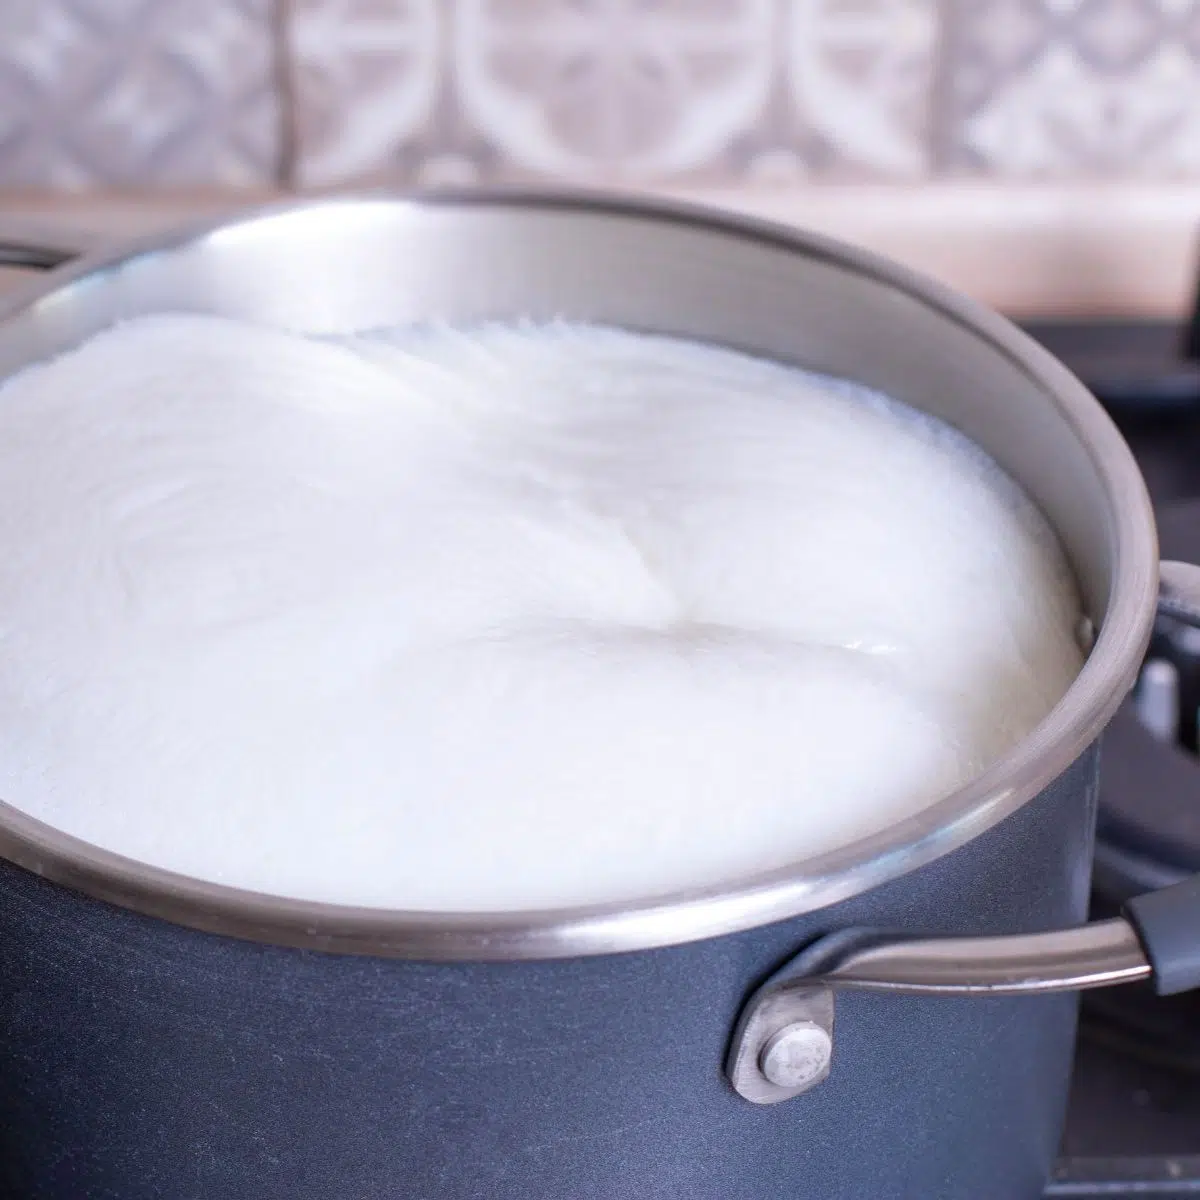 Cara cepat melecur susu untuk kentang tumbuk dengan susu dalam periuk.